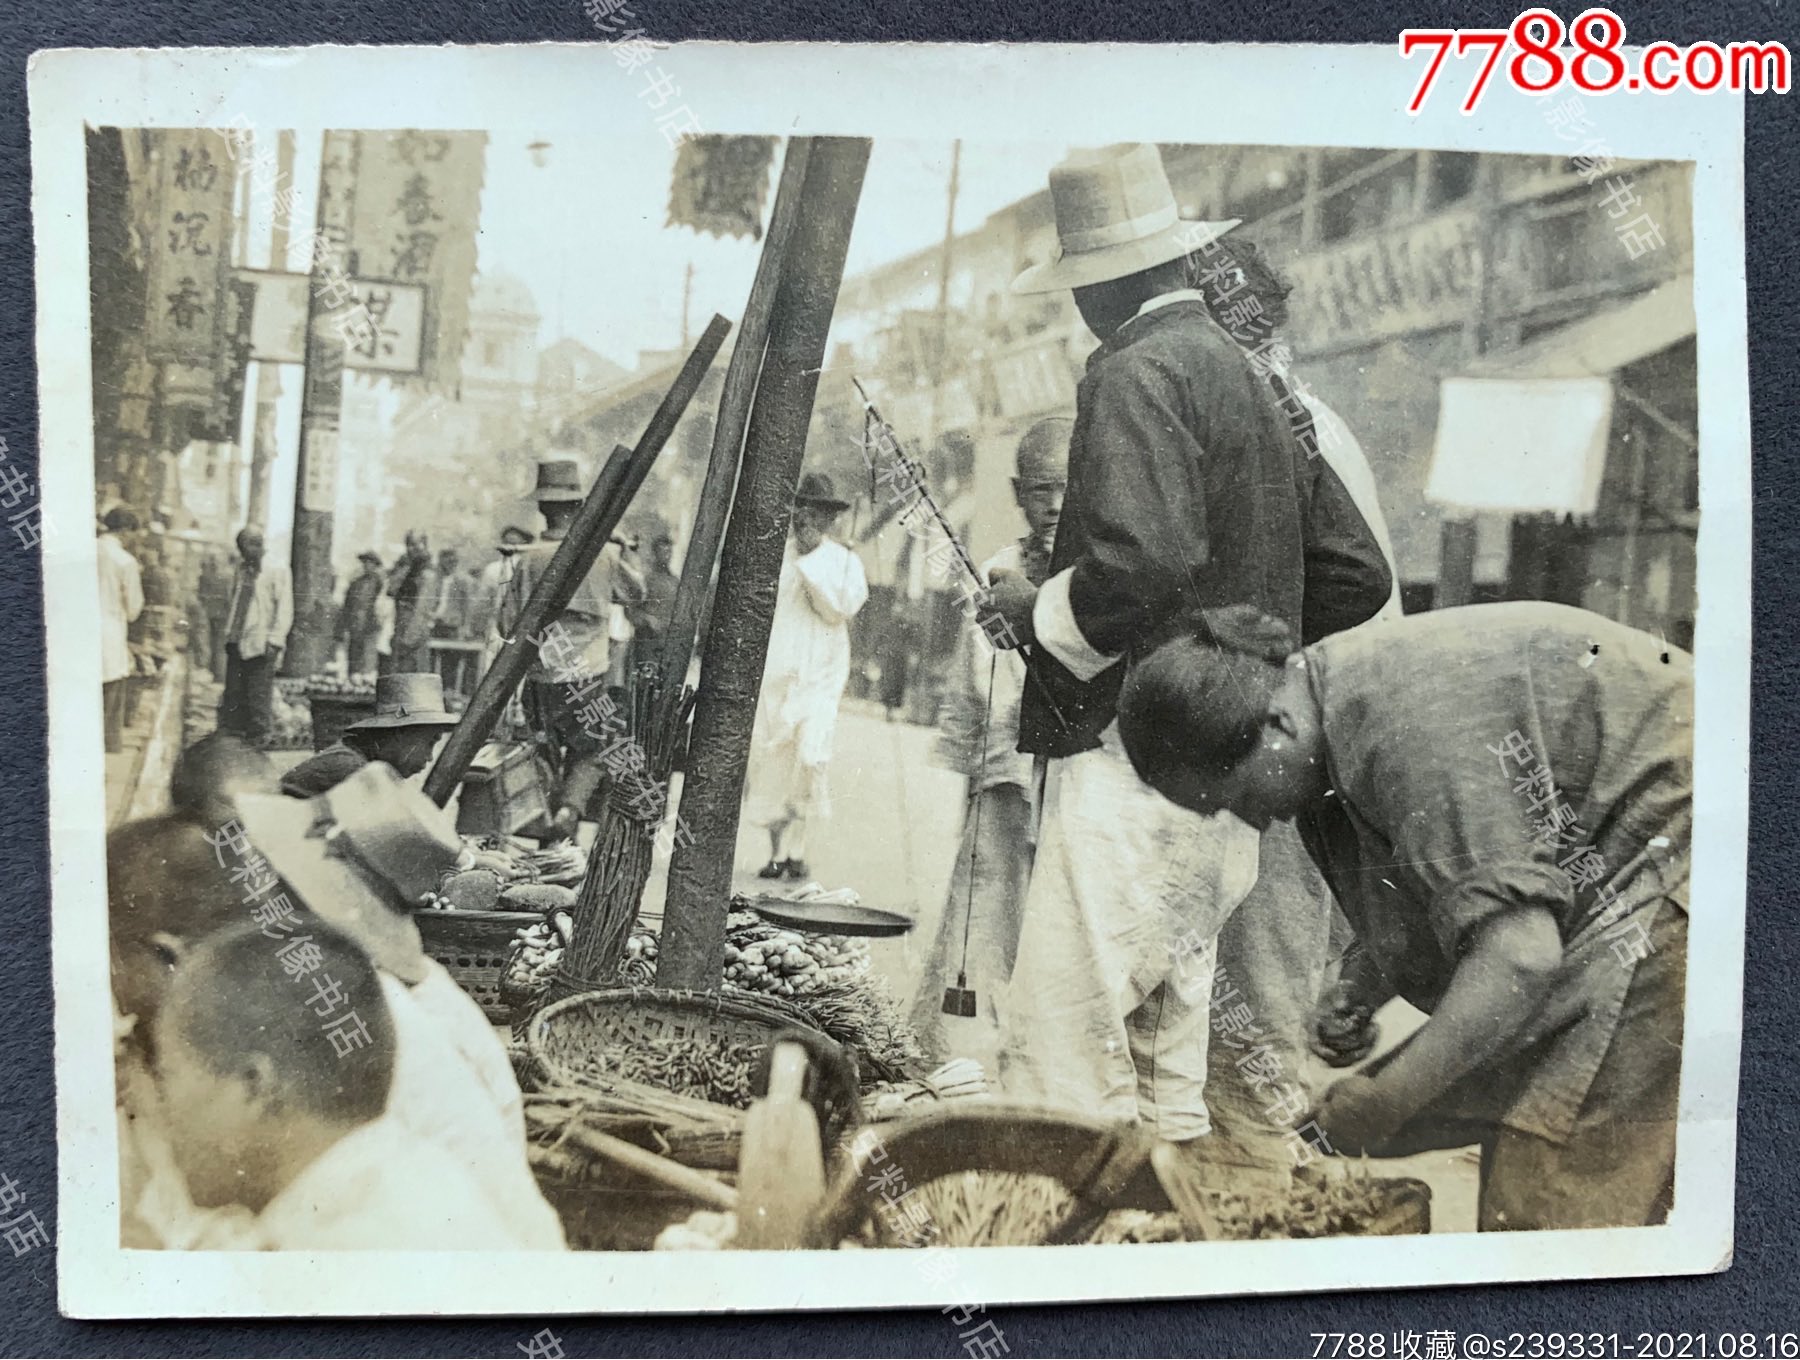 民国时期城镇农贸集市之繁荣景象泛银老照片一枚